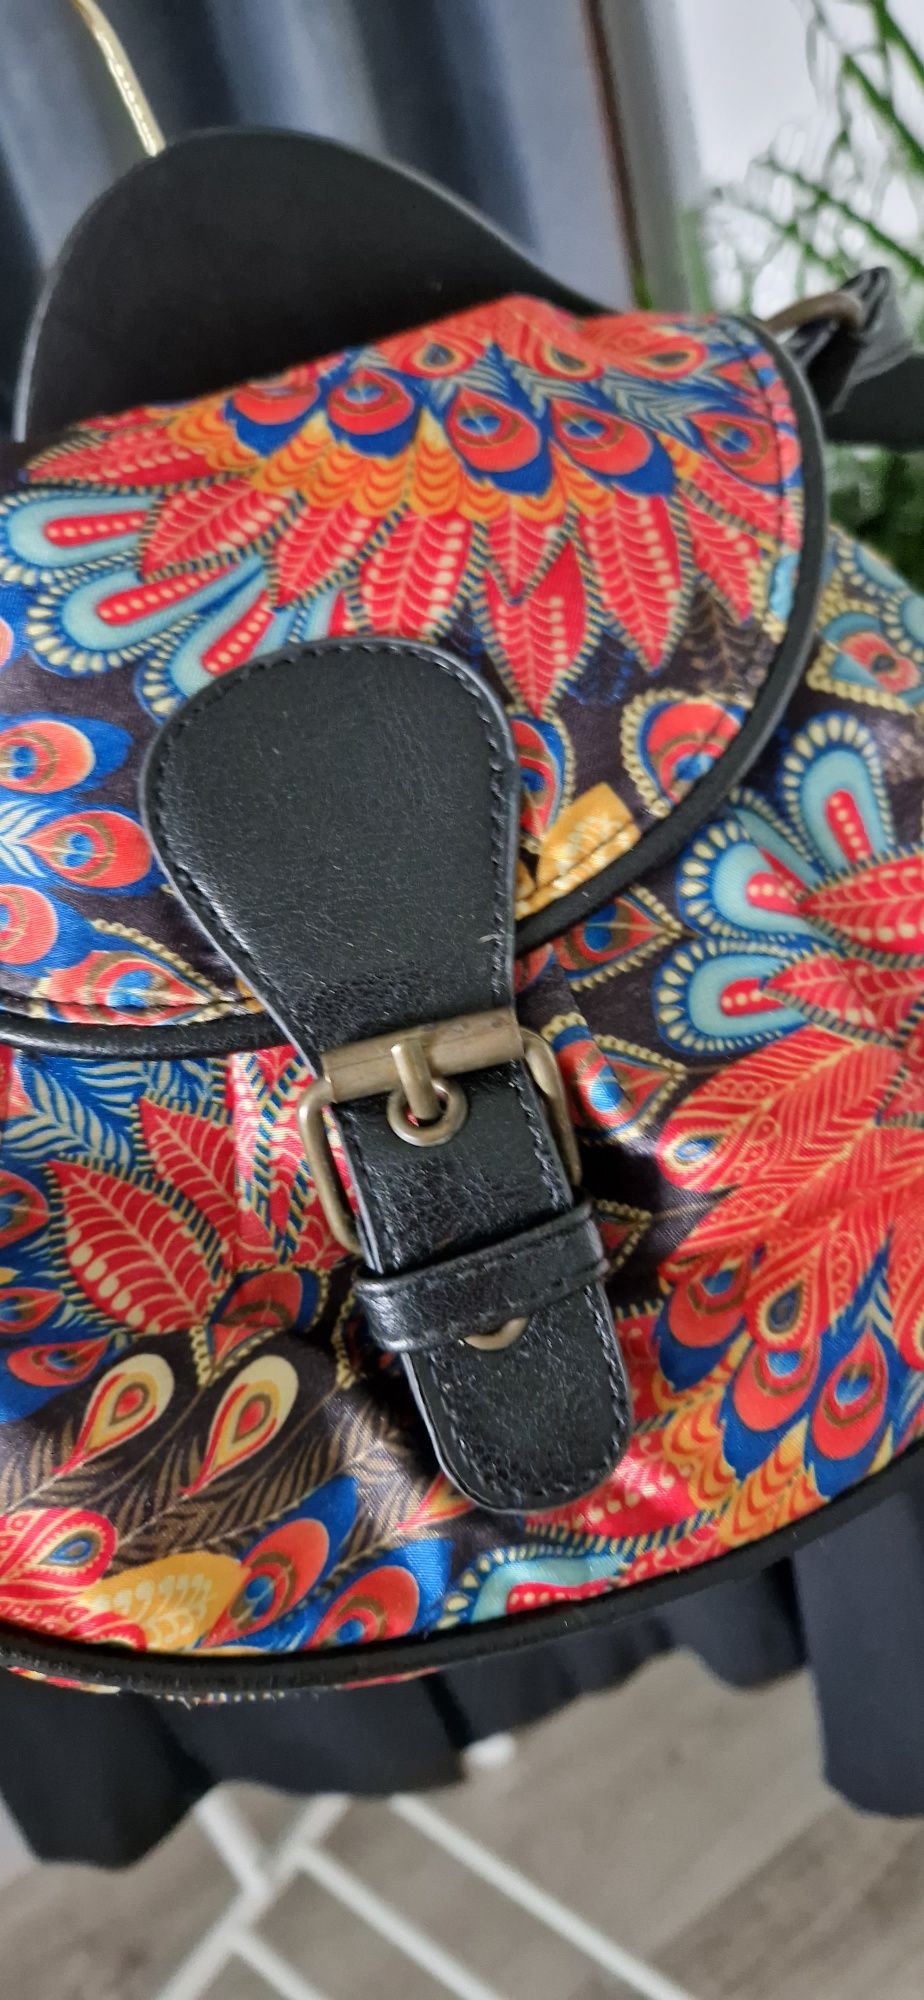 Kolorowa mała torebka damska w kwiaty Graceland